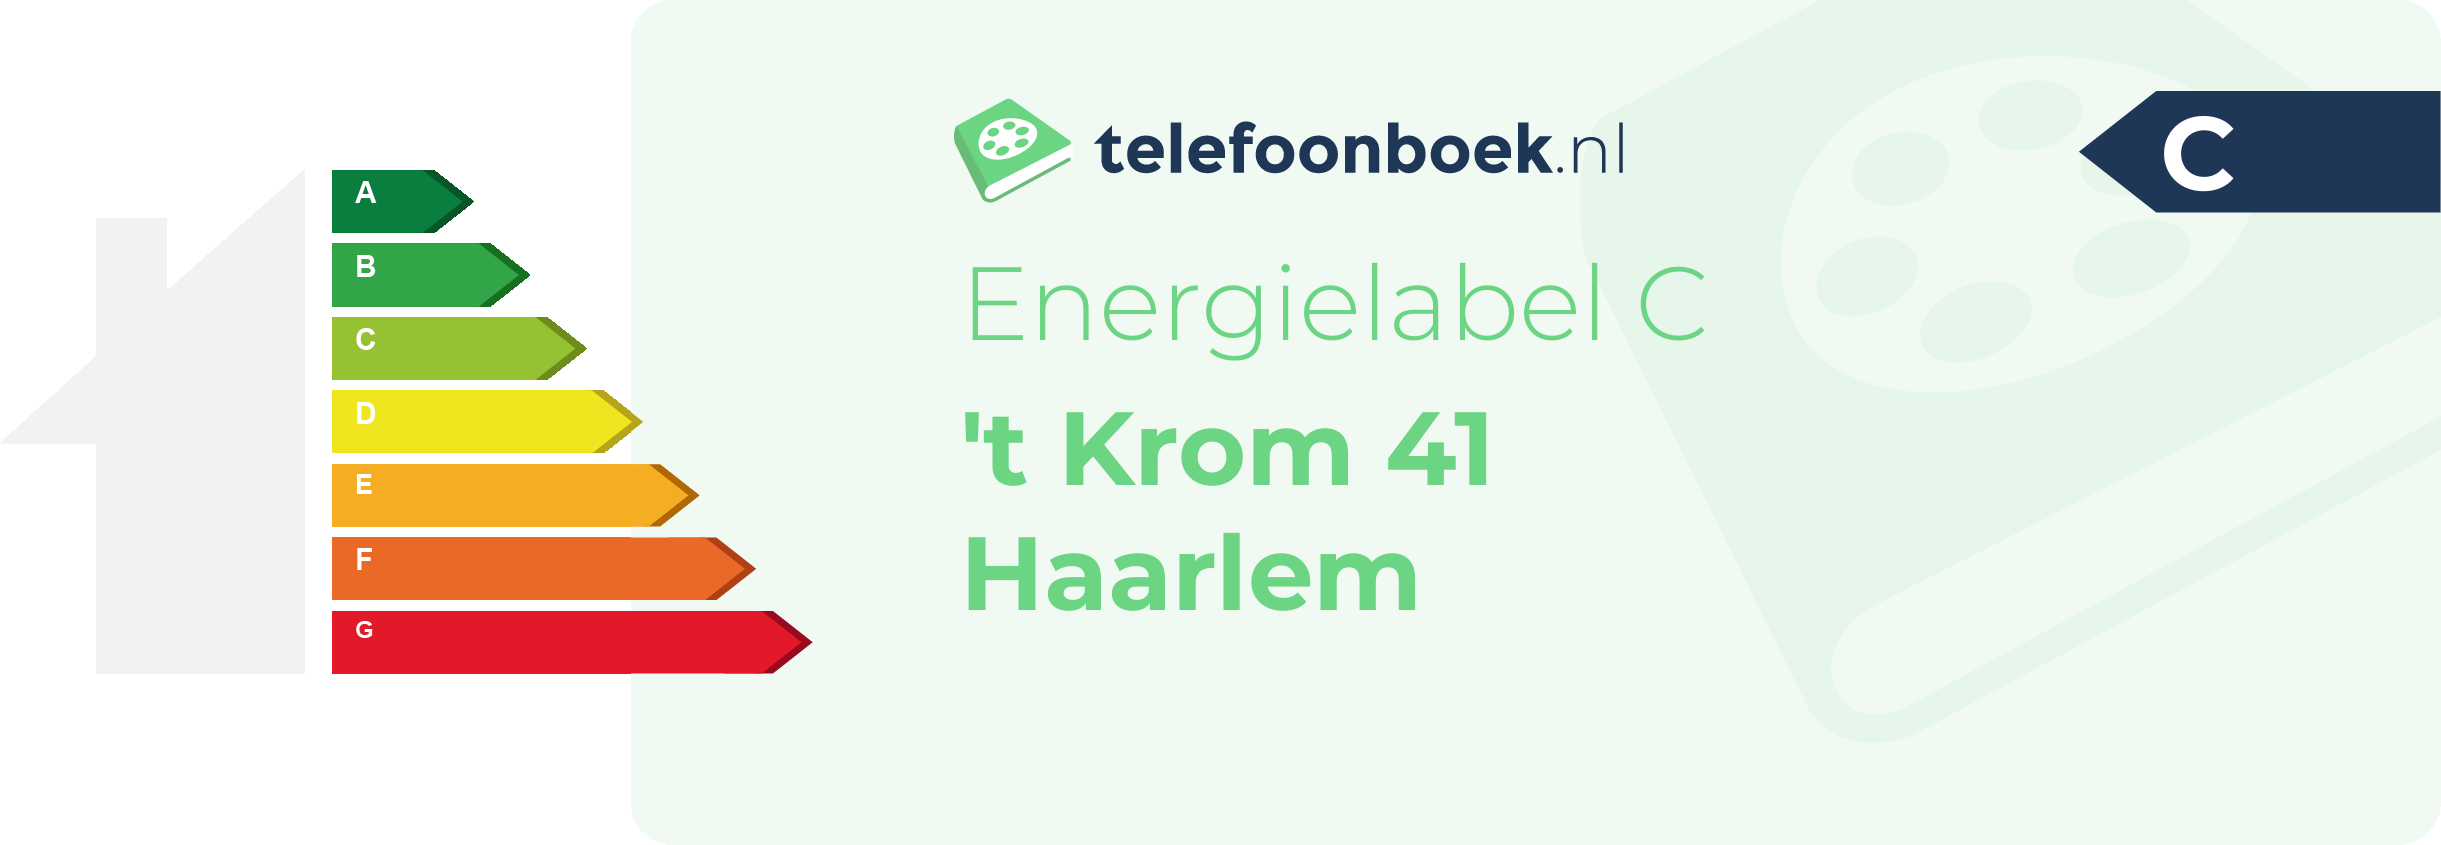 Energielabel 't Krom 41 Haarlem